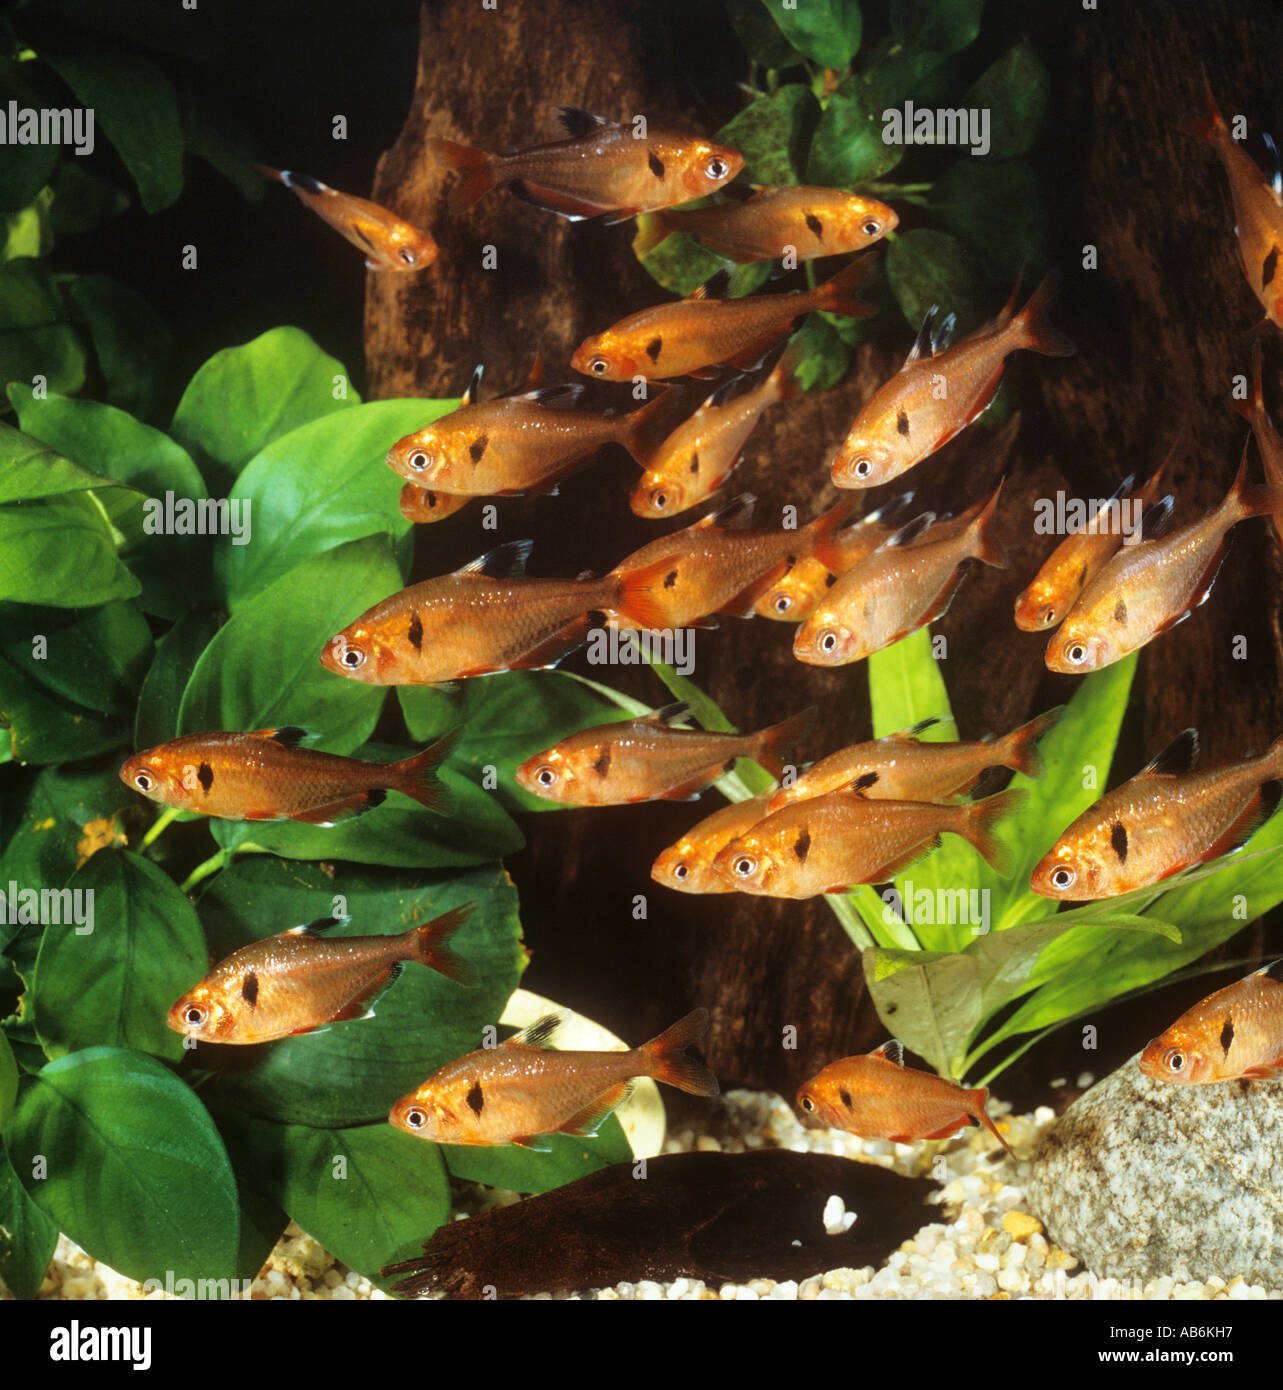 shoal of serpae tetras / Hyphessobrycon serpae Stock Photo